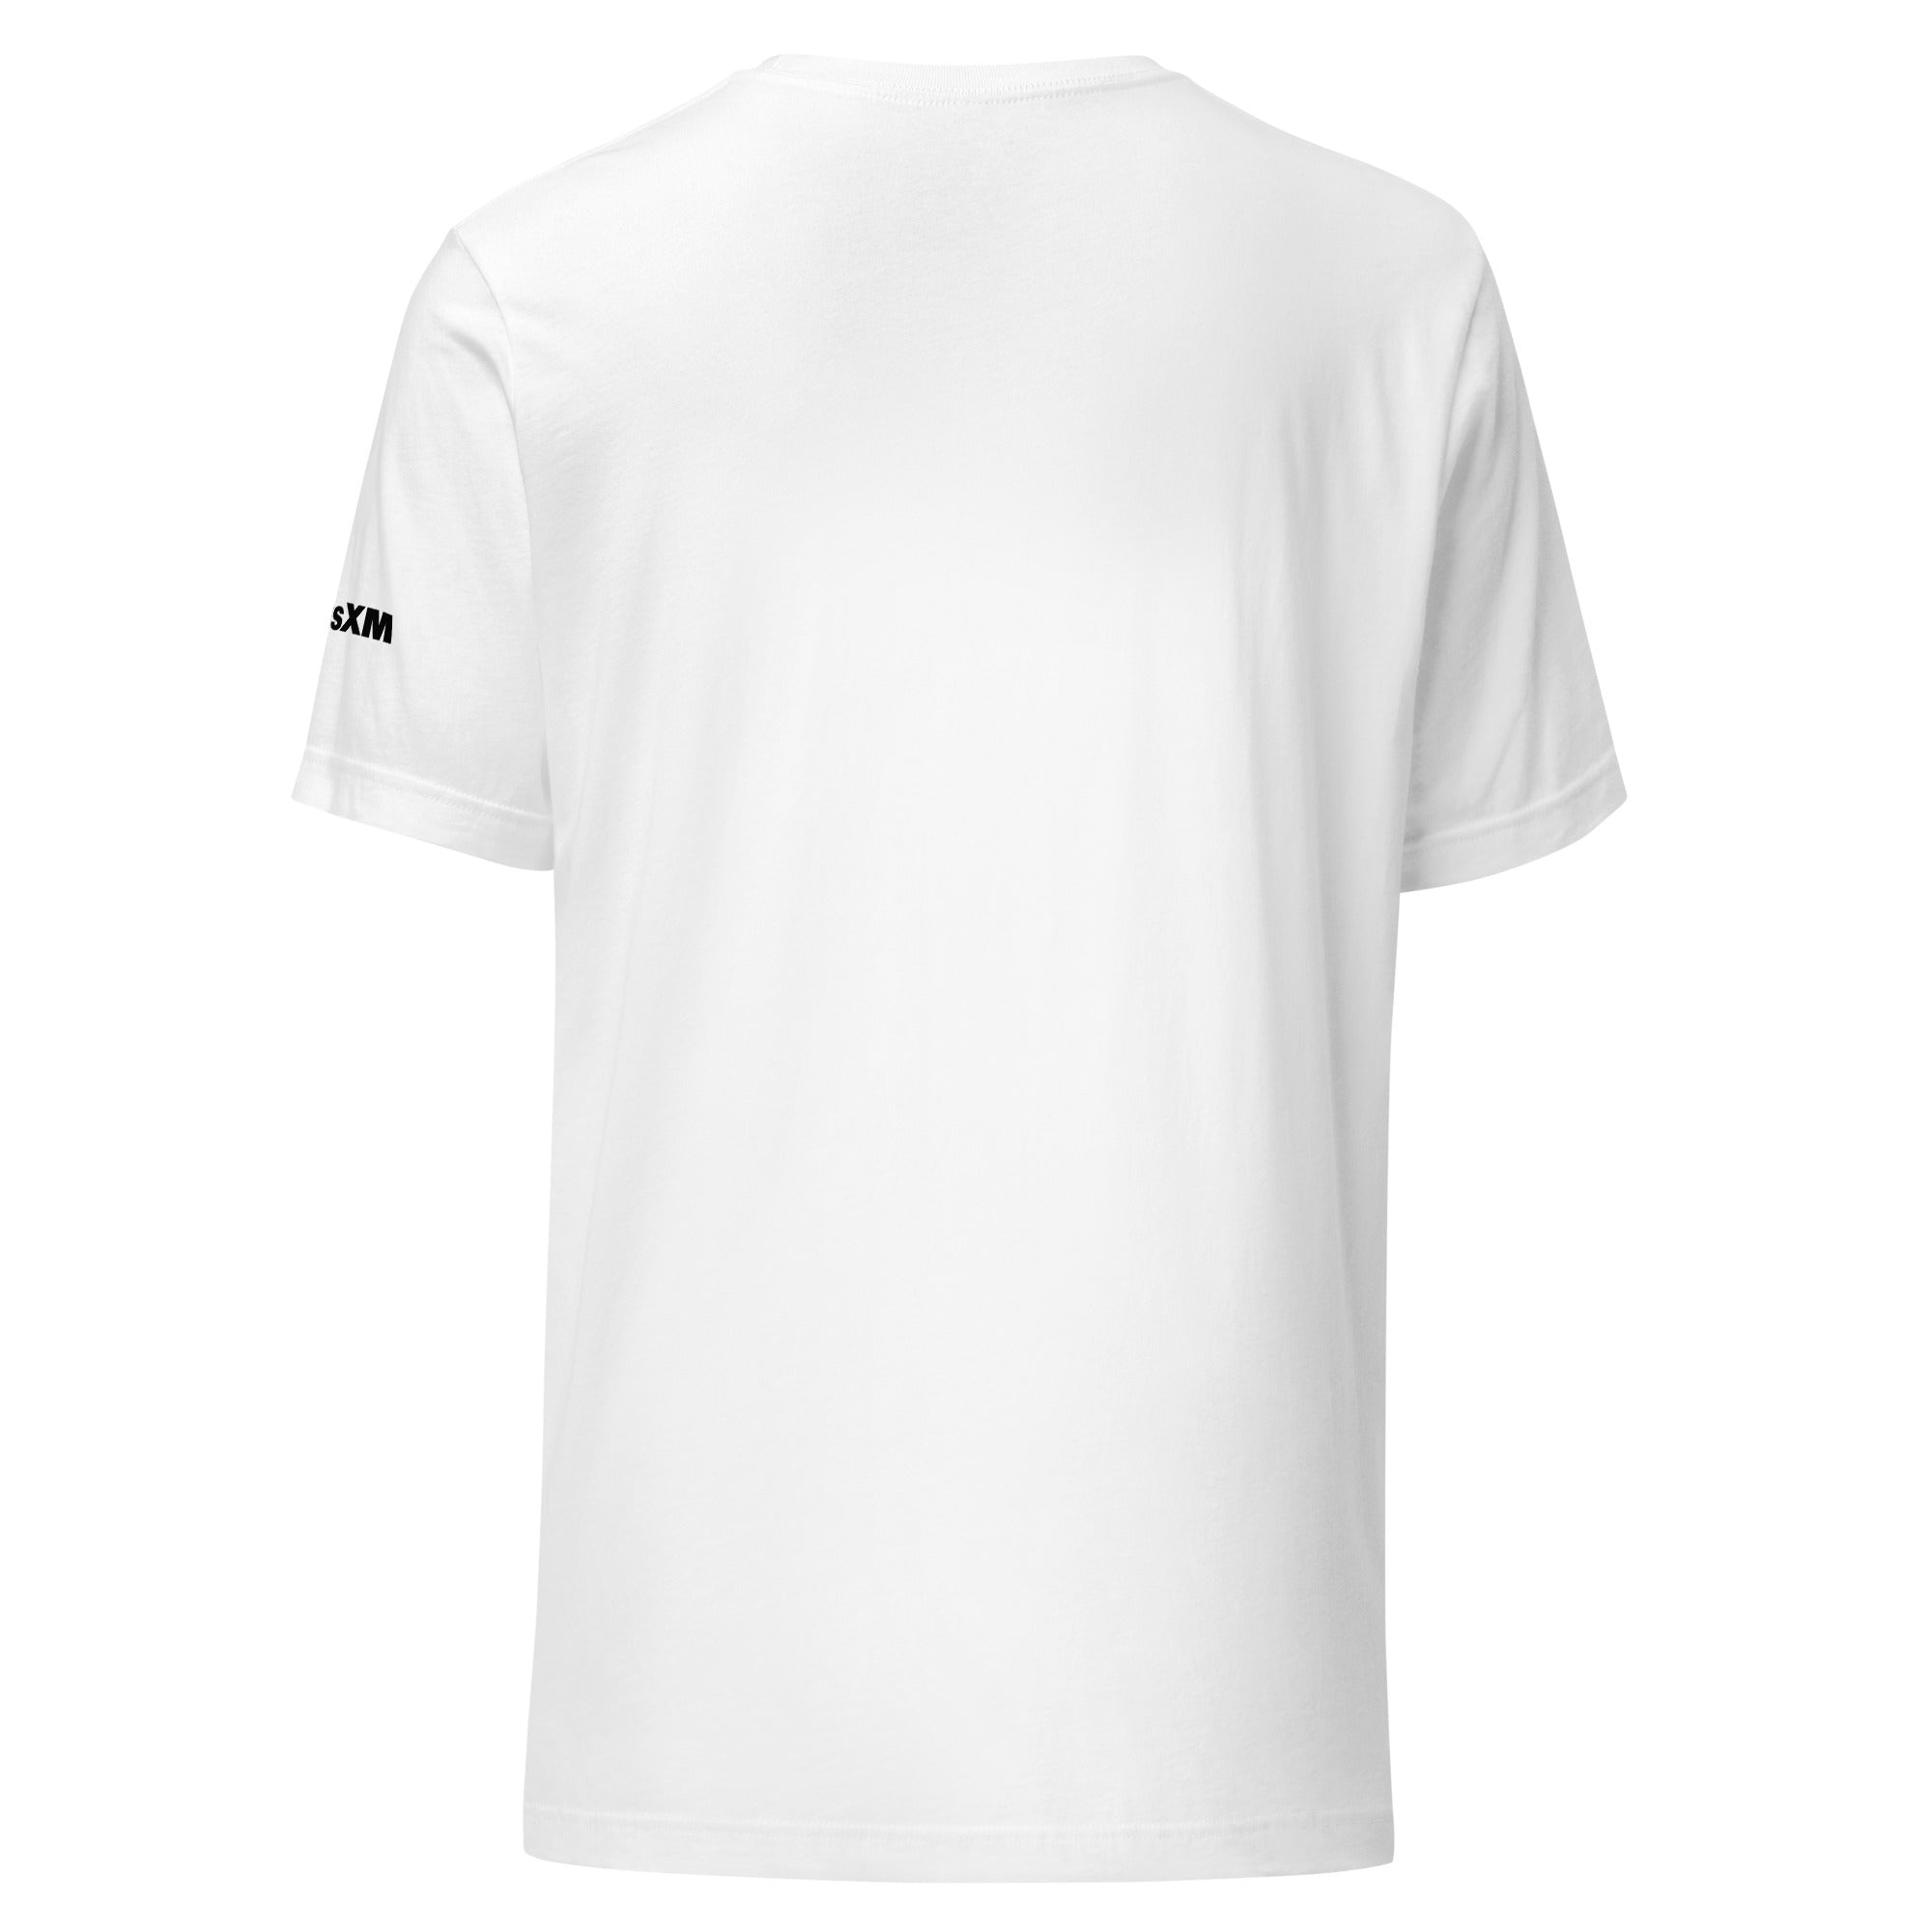 Enlighten: T-shirt (White)